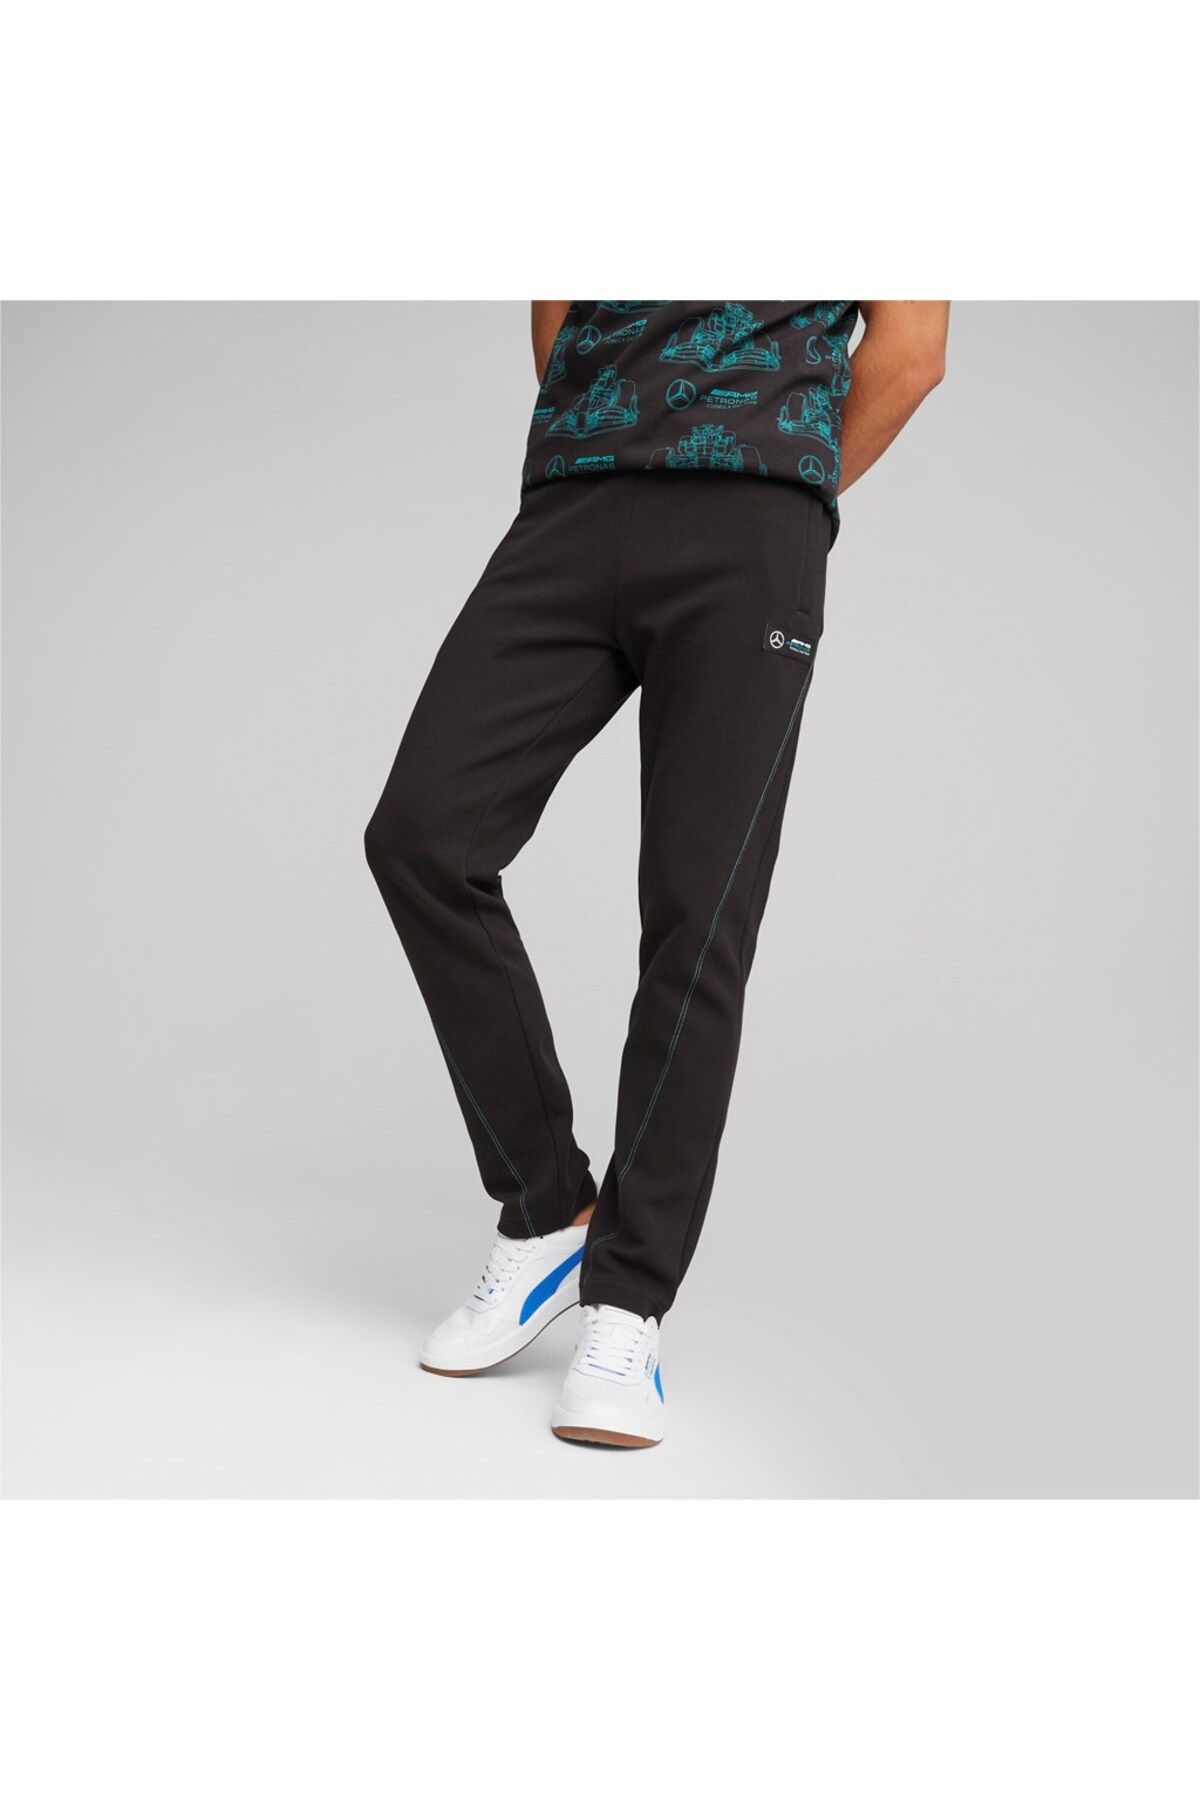 Puma Erkek Mercedes Günlük Pantolon Mapf1 Sweatpants, Slim/oc Black 62115101